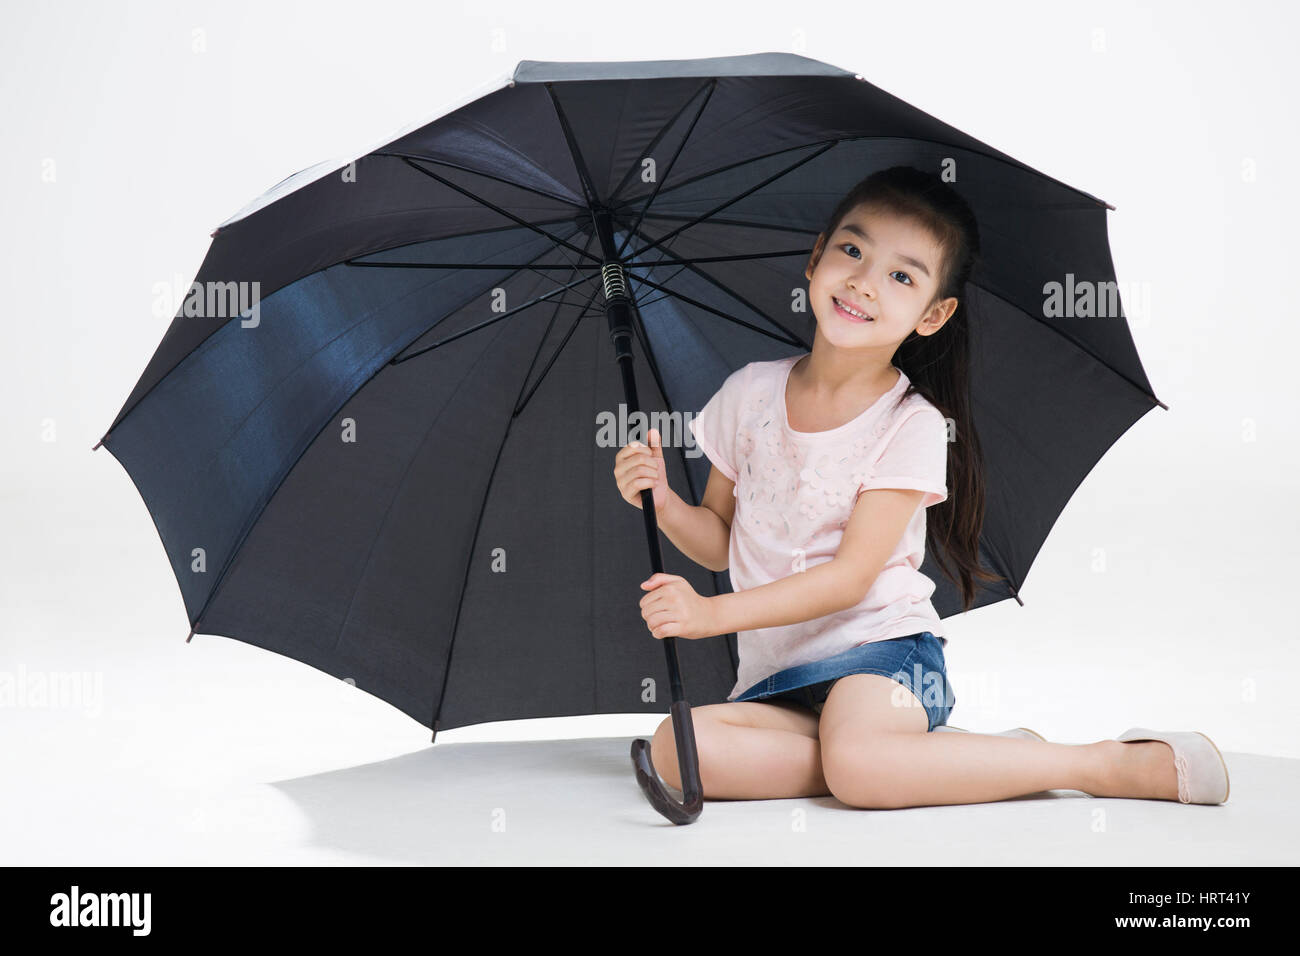 Paraguas de cuerpo entero sonriendo fotografías imágenes alta resolución - Página 6 - Alamy